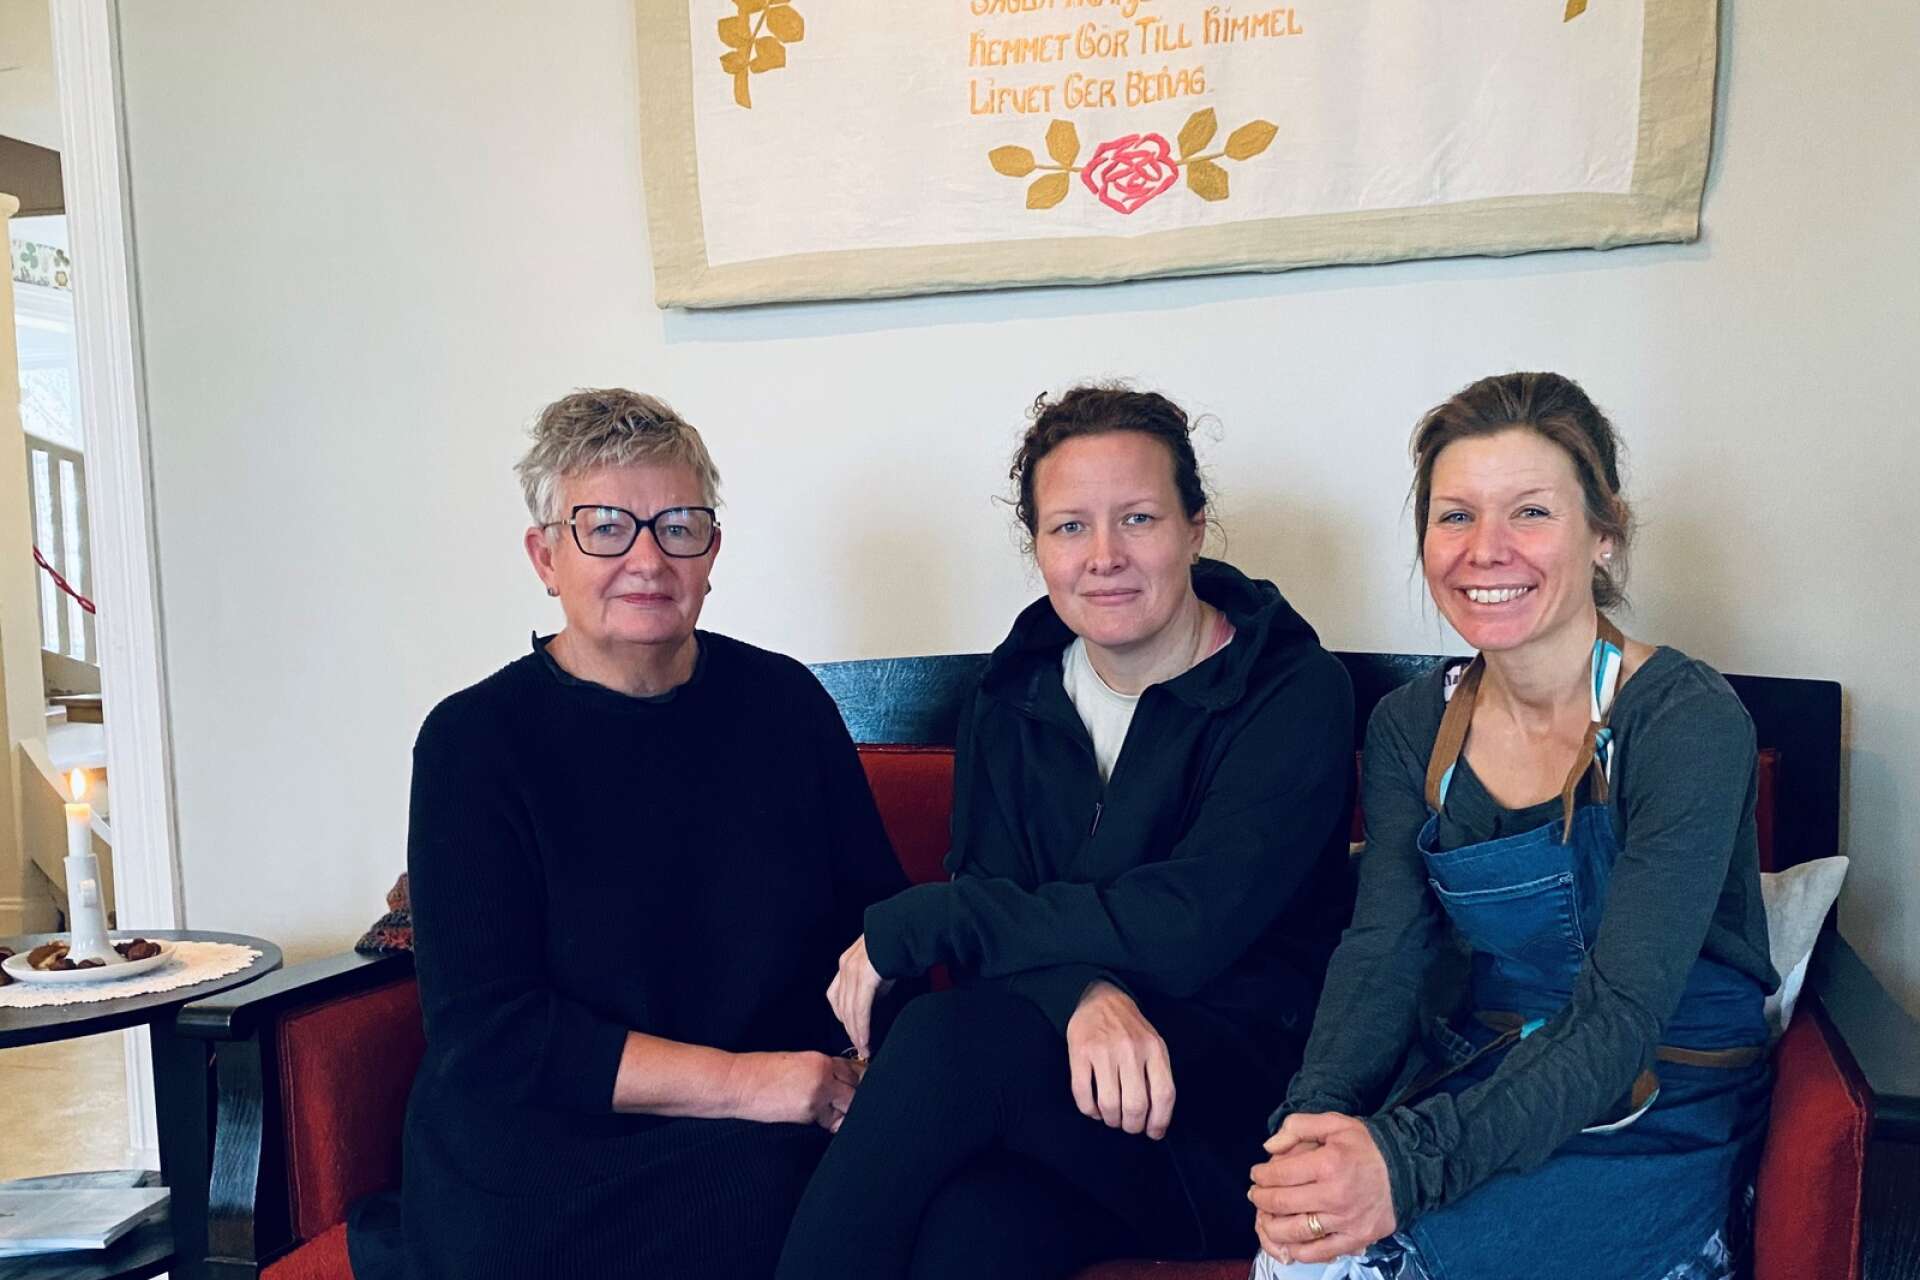 Yvonne Fahlgren, Frida Fahlgren och Camilla Windroth är trion som genom värdskap och god smak skapat en välkomnande samlingsplats. Foto: Hanna Sundblad